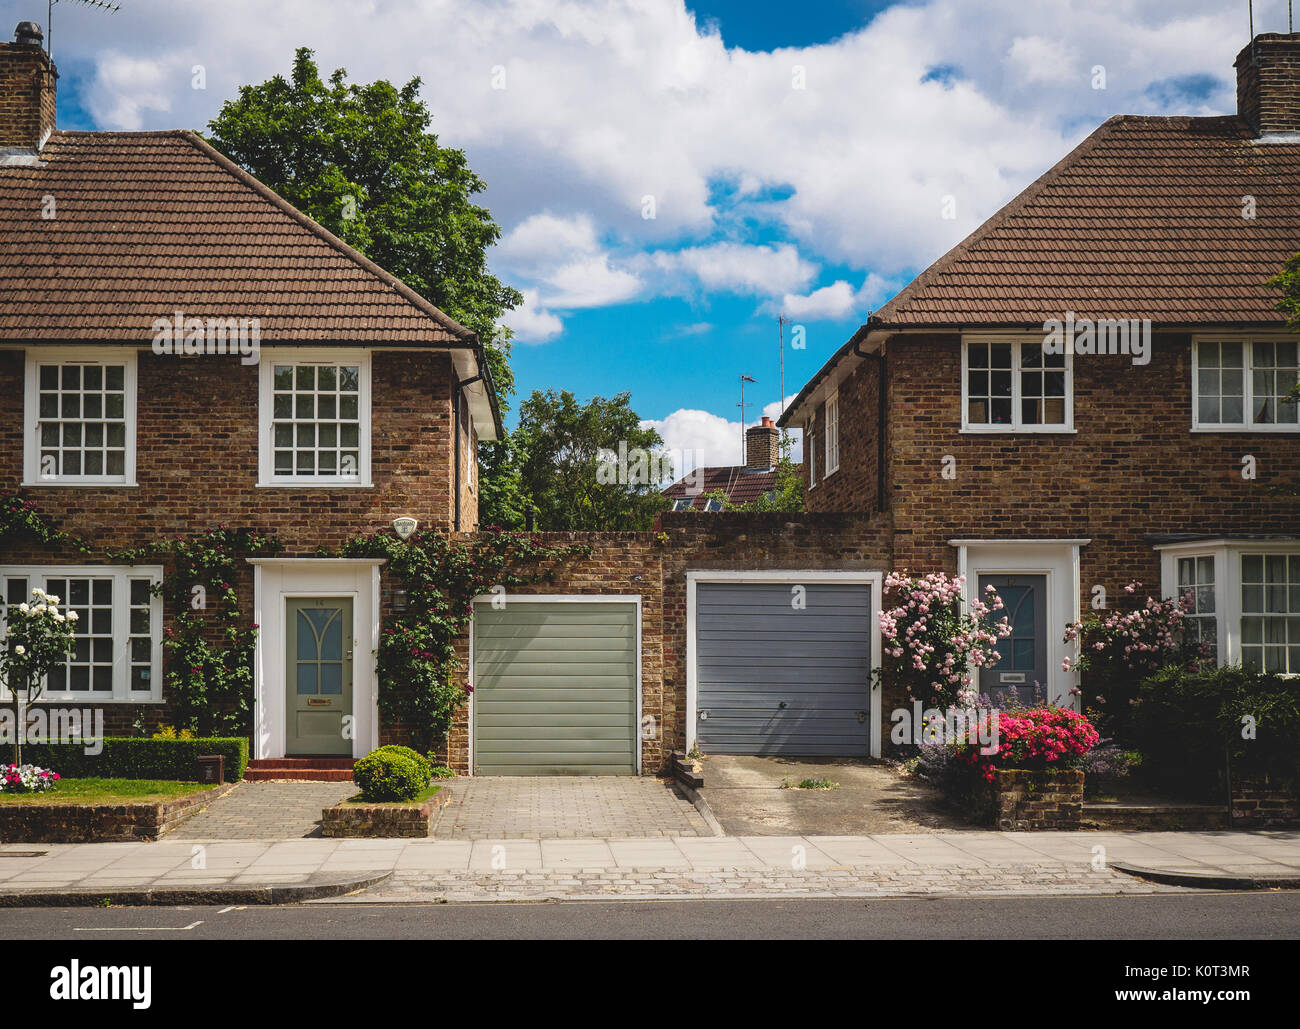 Maisons typiques du nord de Londres (Royaume-Uni). Juillet 2017. Le format paysage. Banque D'Images